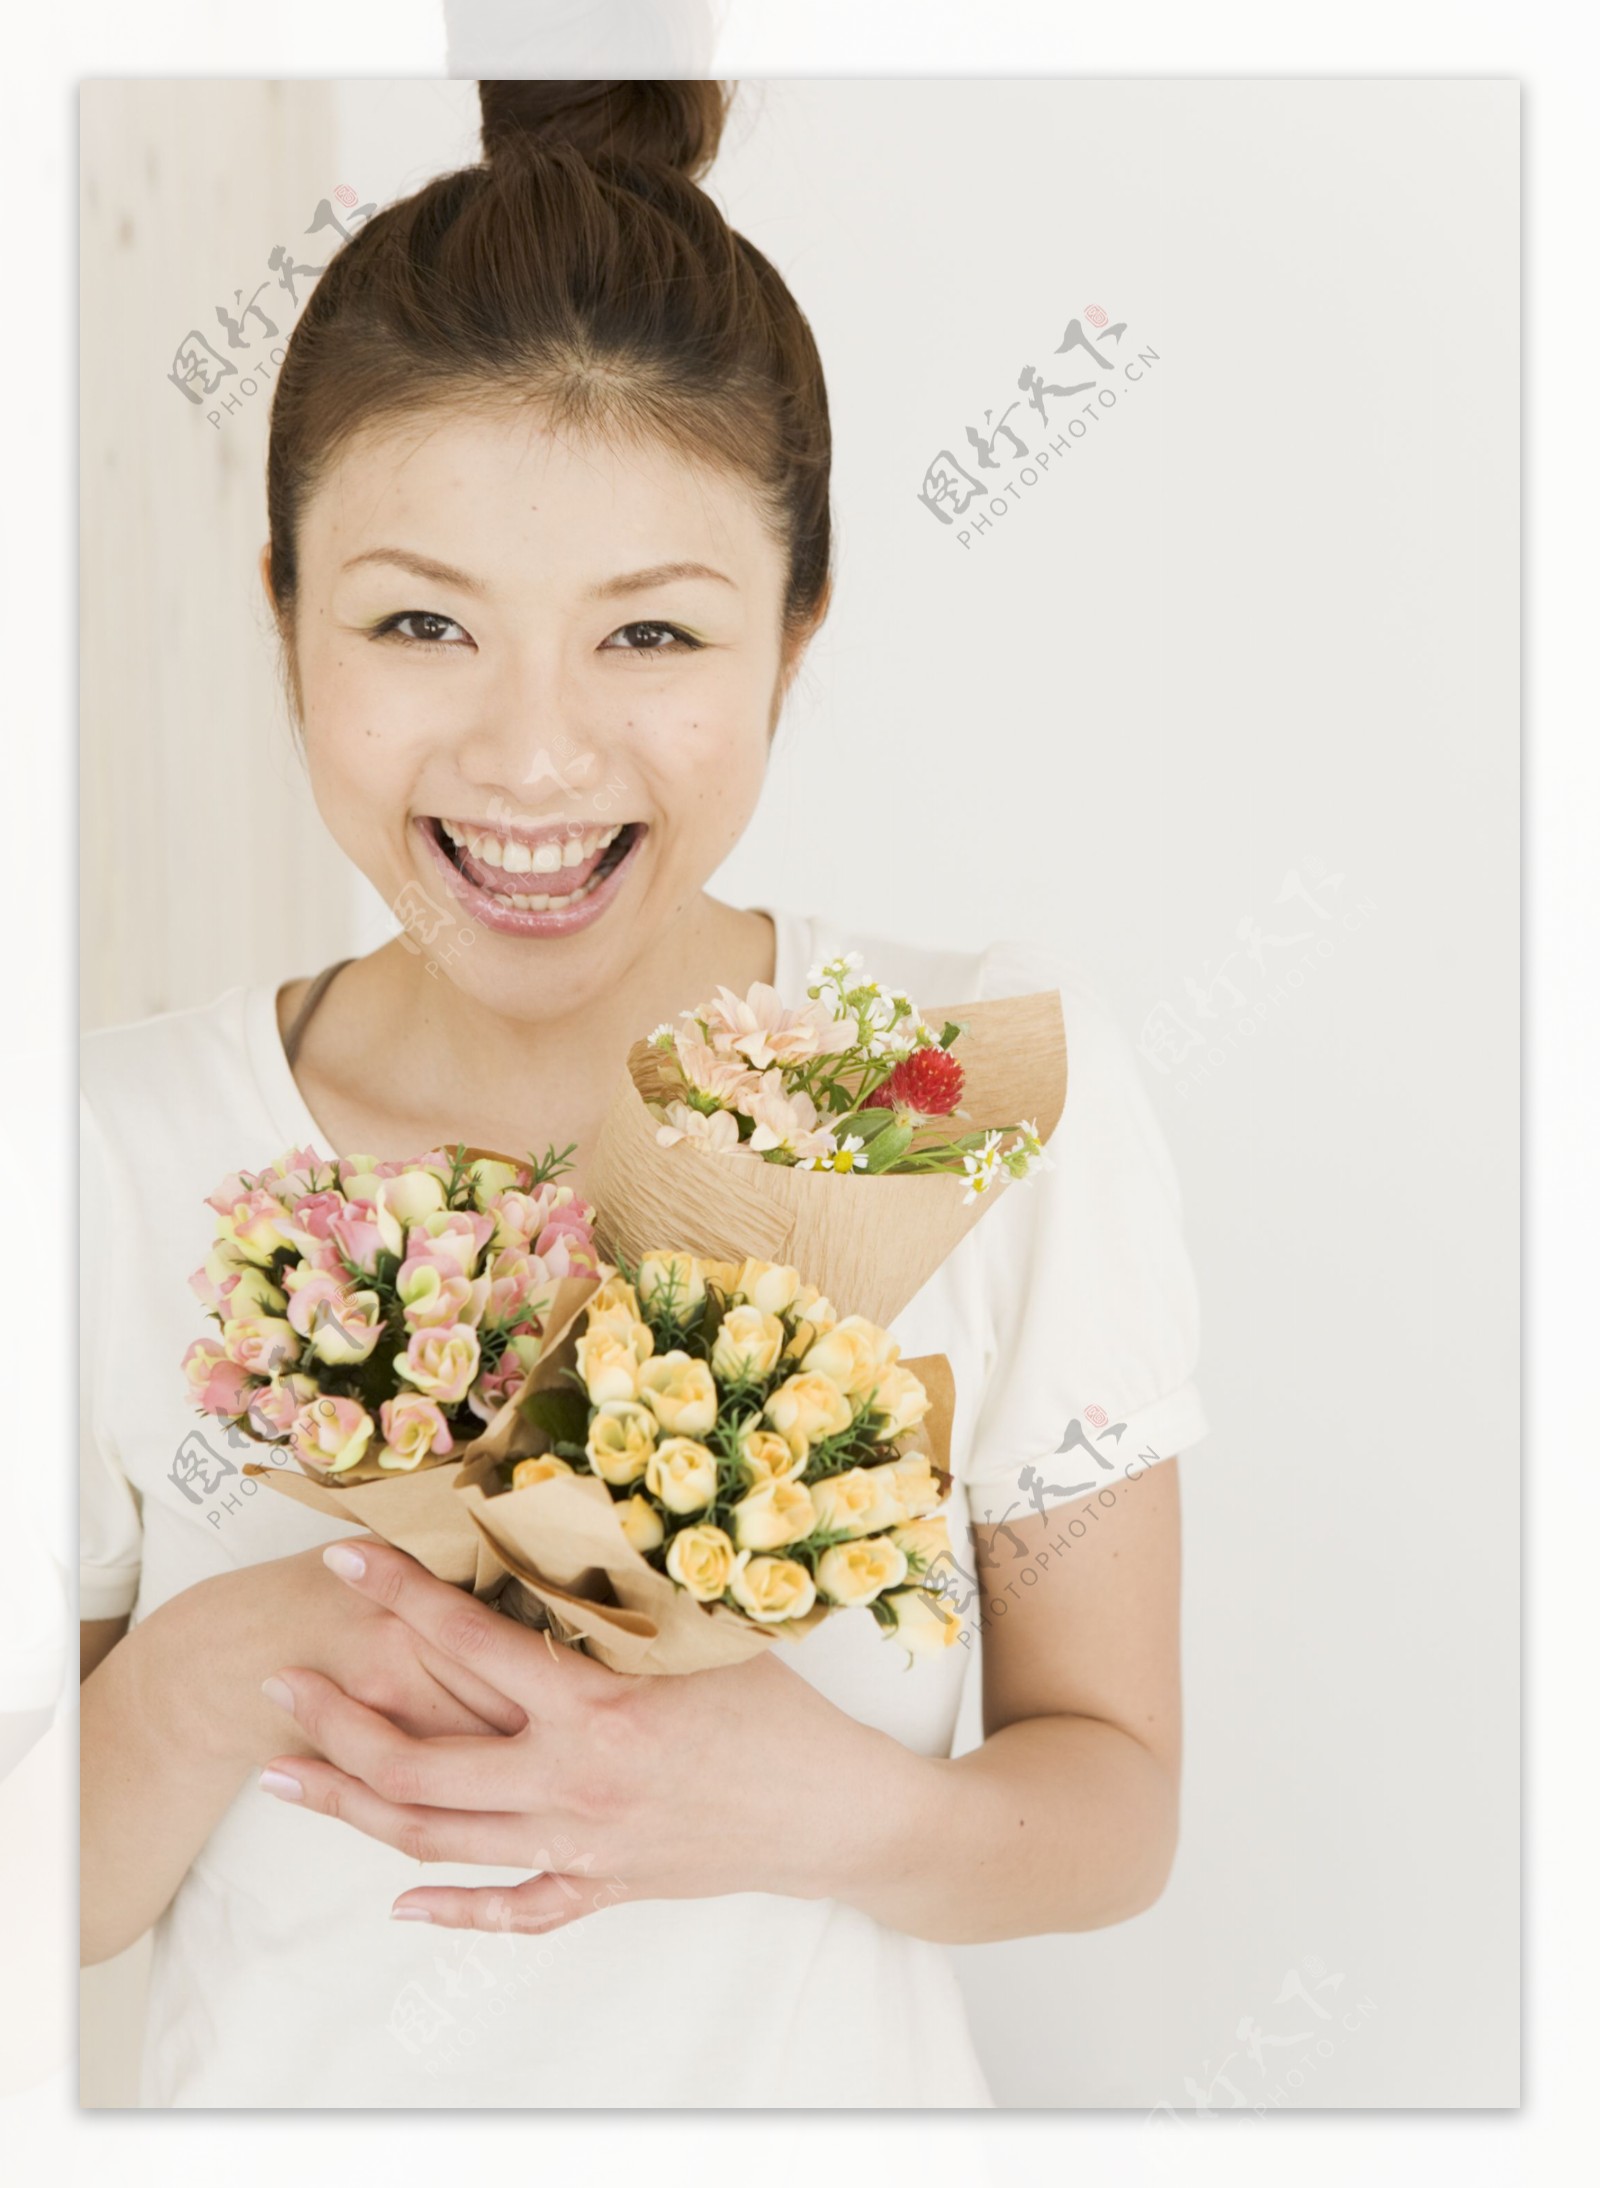 手捧鲜花的开心女孩子图片